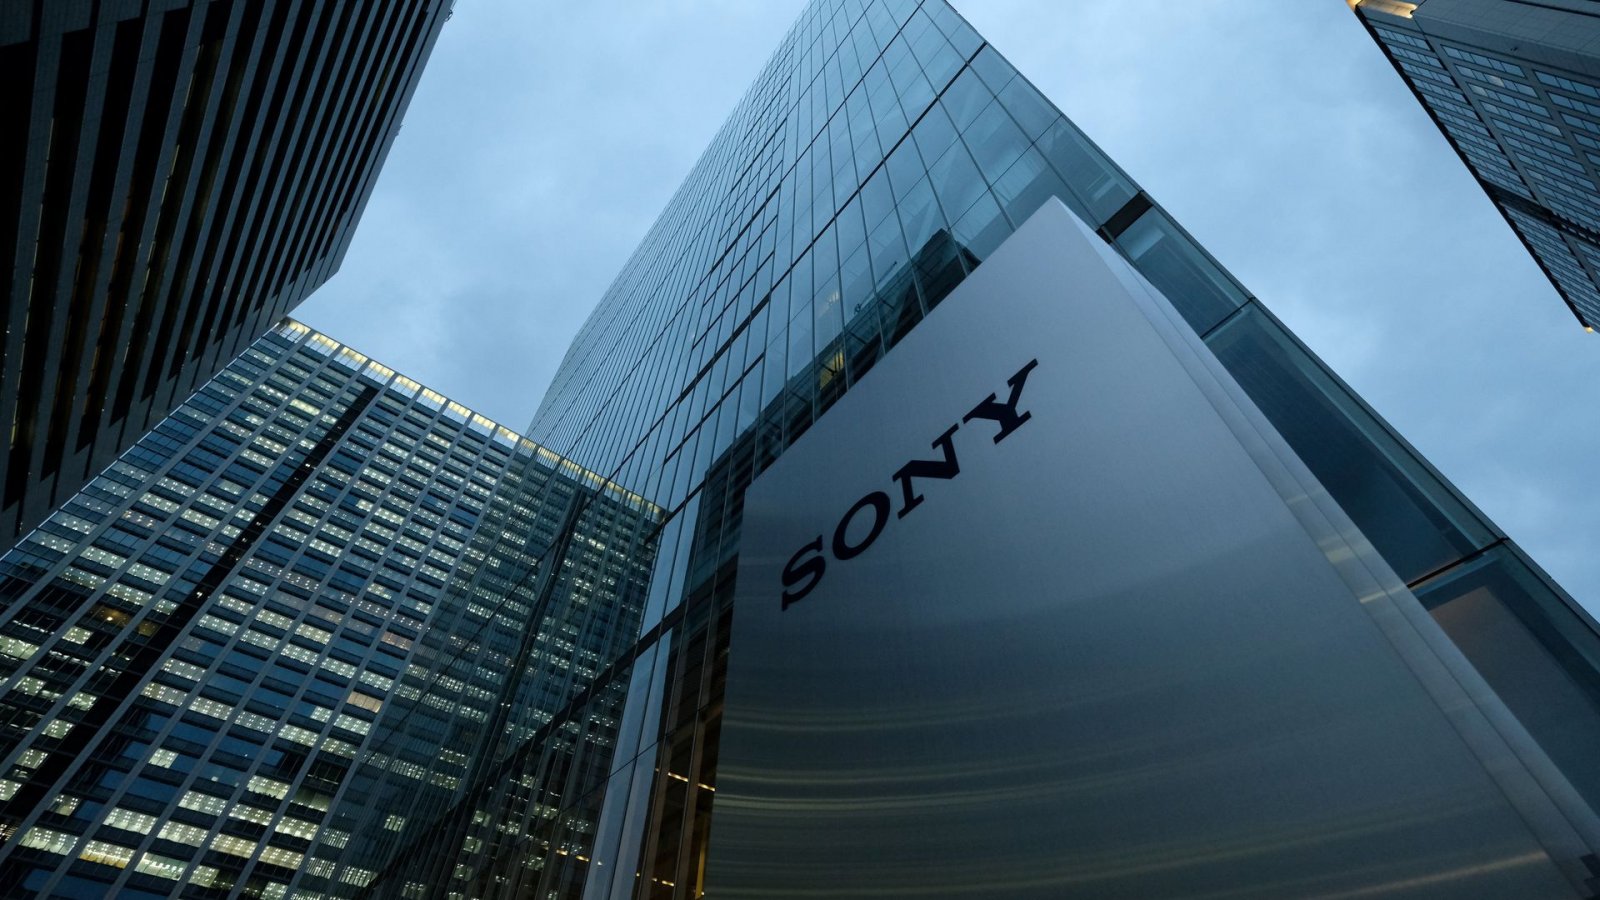 Xbox contro PlayStation anche in politica: una senatrice USA accusa Sony di monopolio